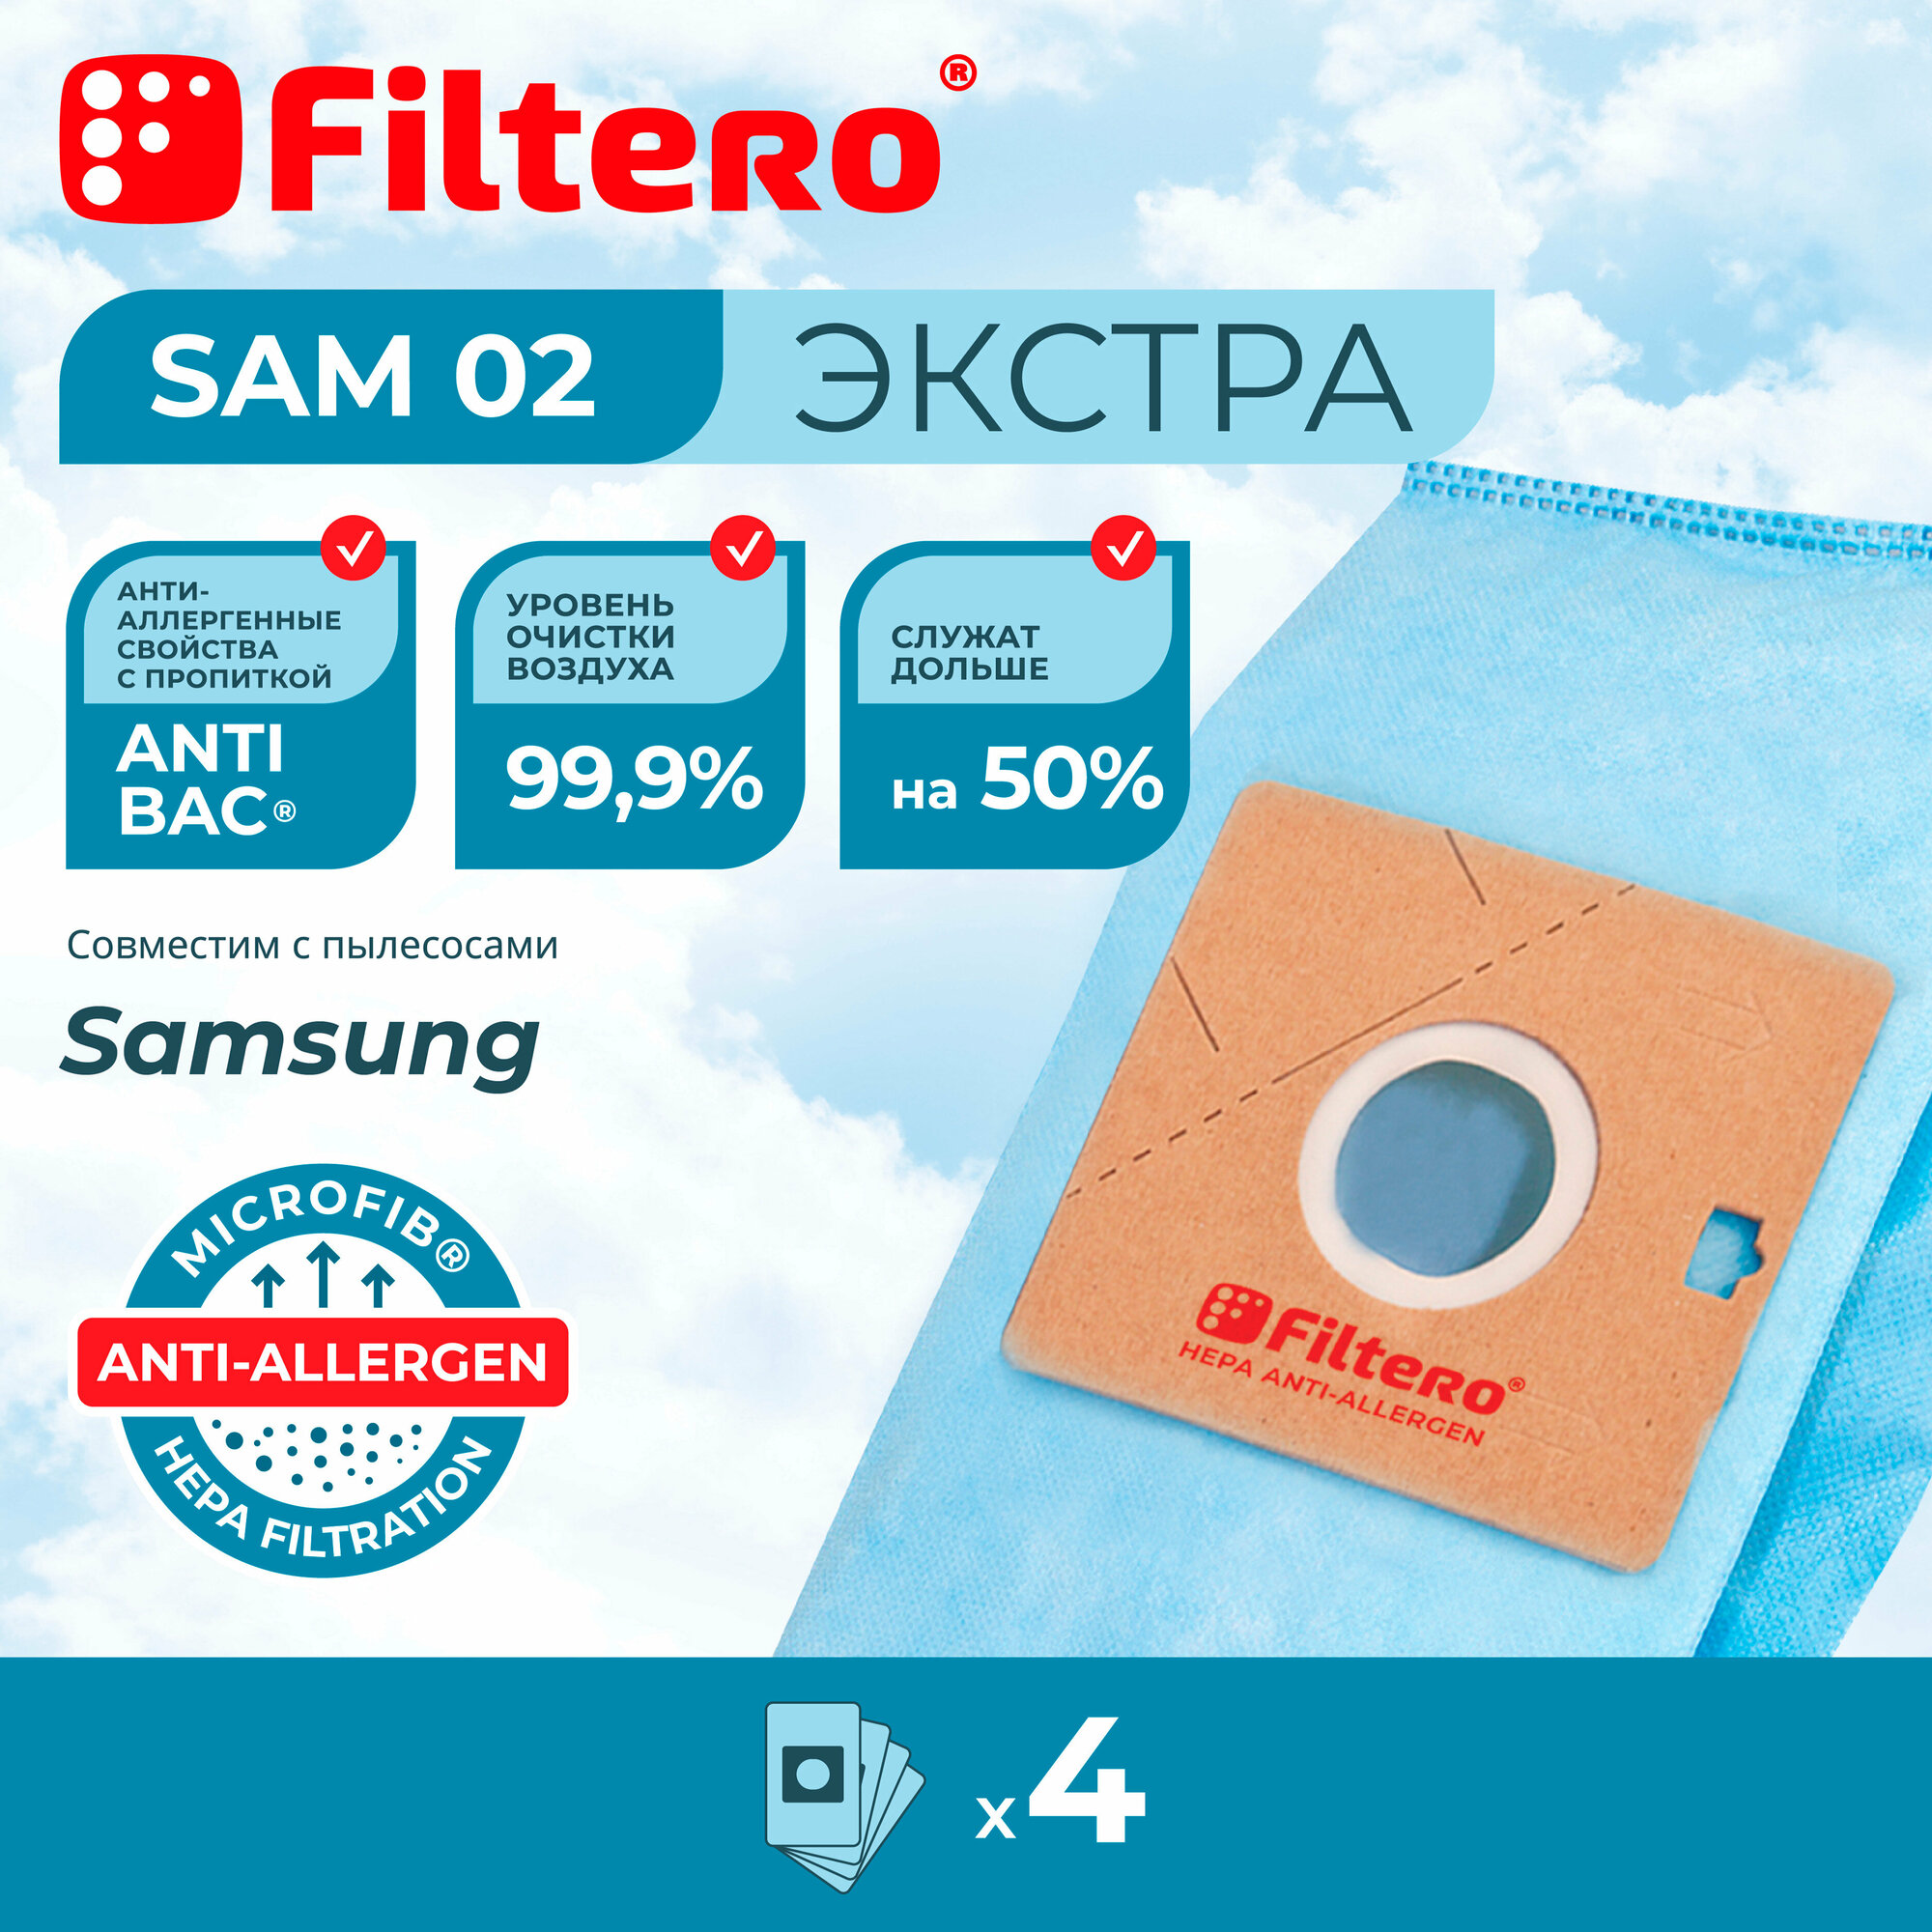 Мешки-пылесборники Filtero SAM 02 Экстра, для пылесосов SAMSUNG, синтетические, 4 штуки